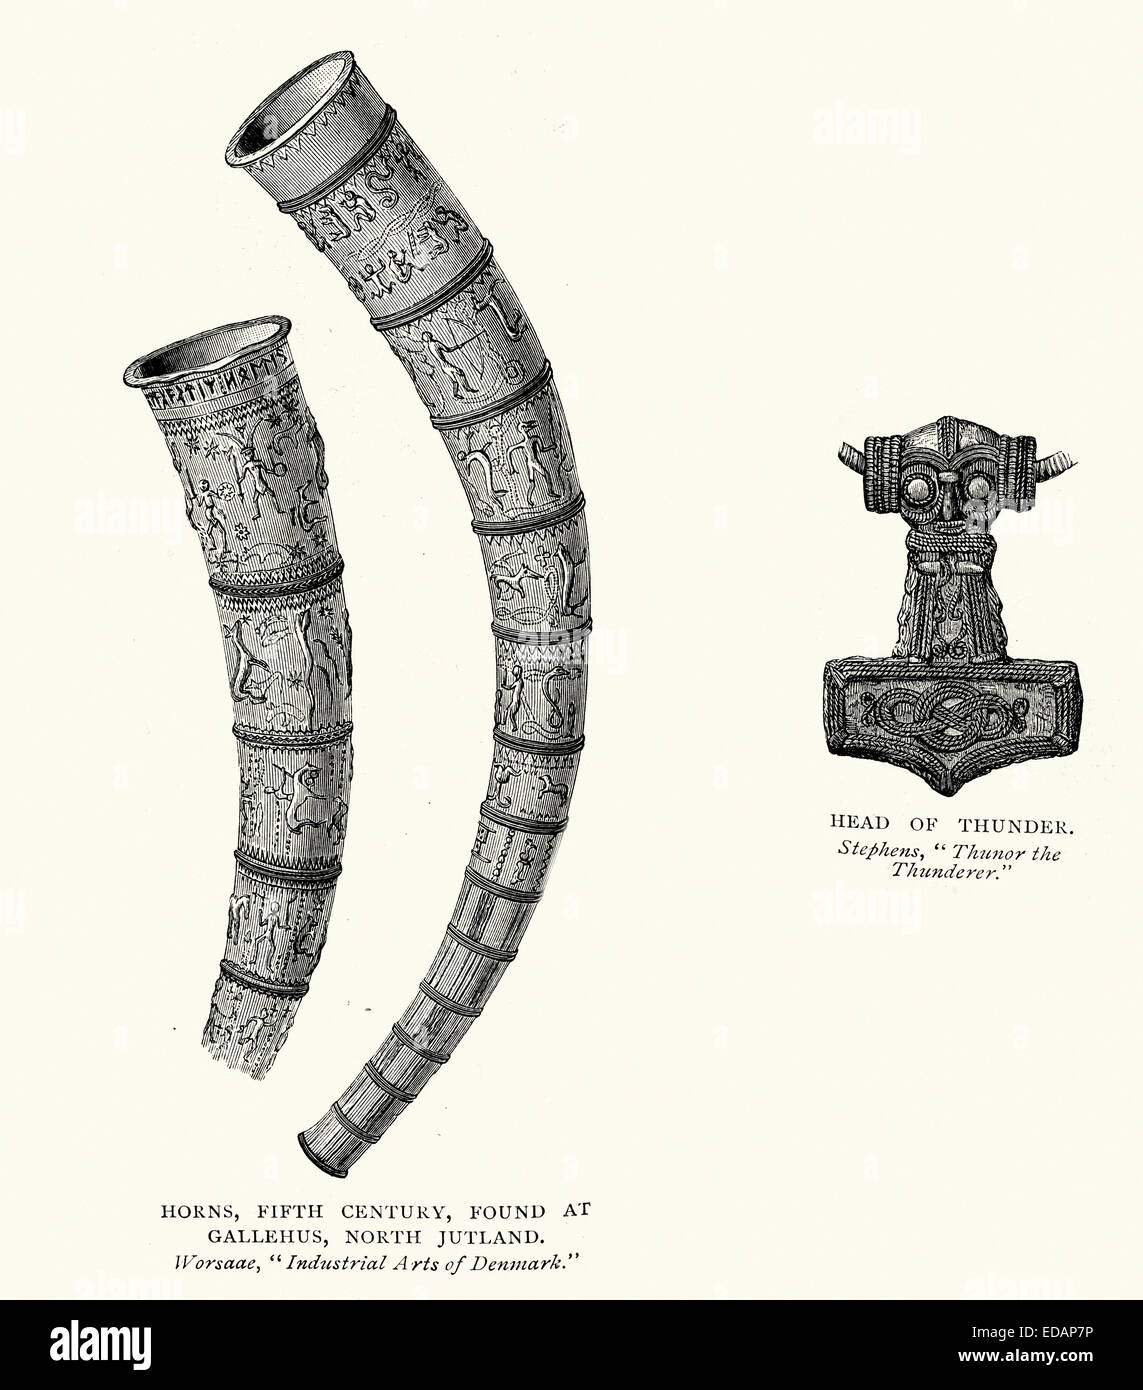 Norse e viking artefatti, quinto secolo Horn trovato alla Gallehus, Jutland del Nord e la testa di Thor il tuono Foto Stock